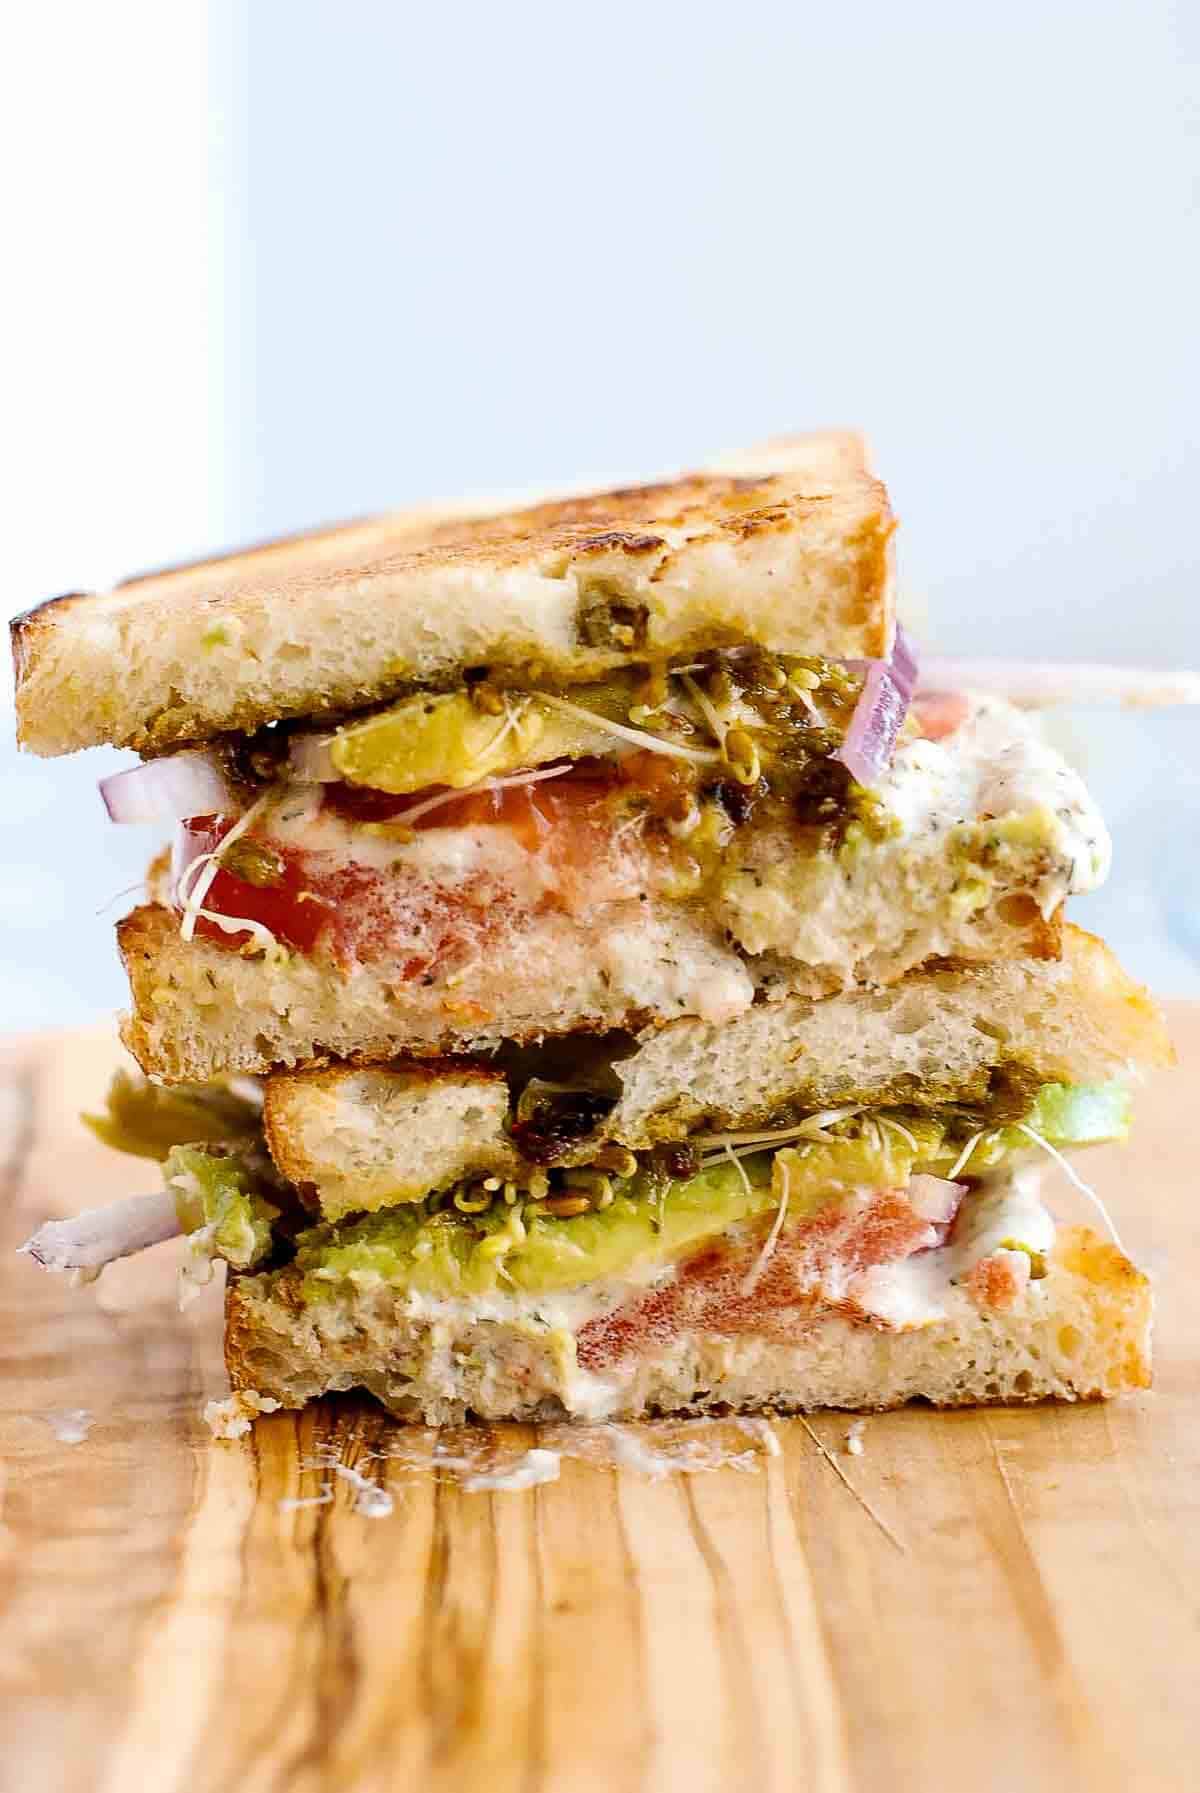 stacked tunacado sandwich on cutting board.